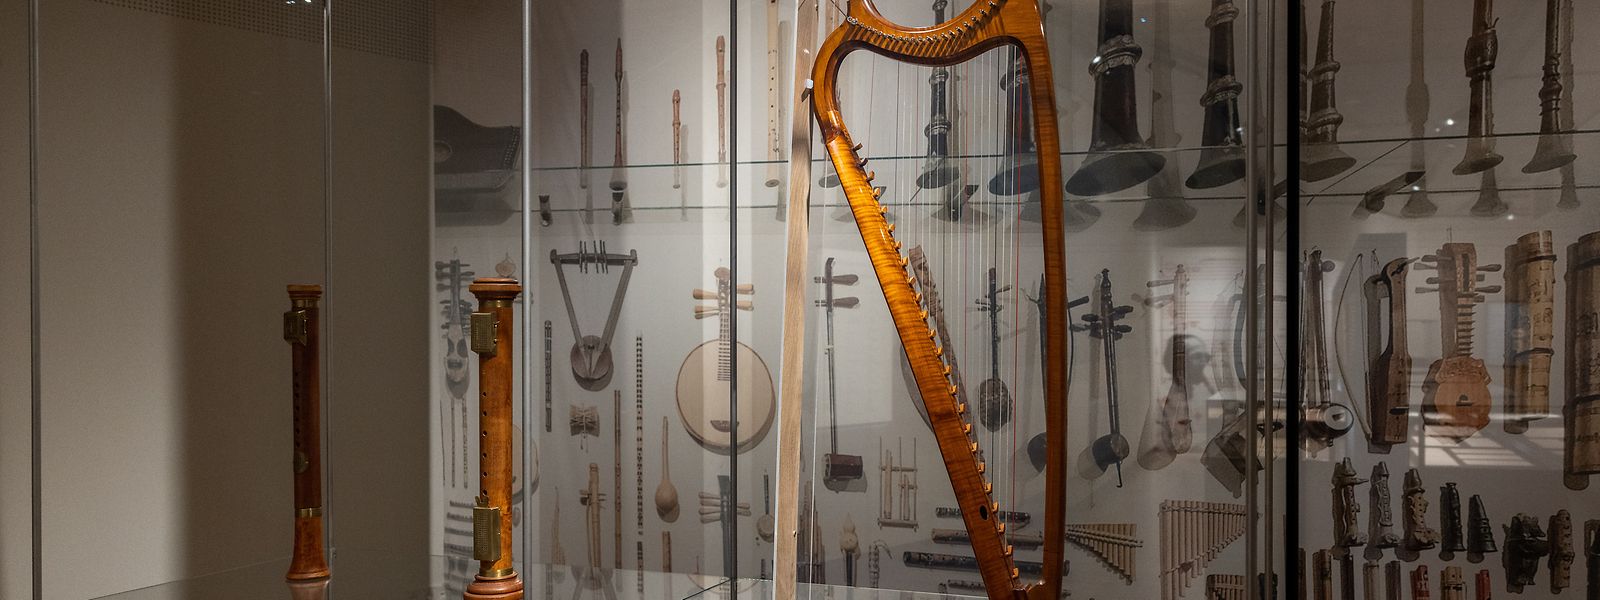 Une exposition pour découvrir les innombrables champs d'activités du musicien.